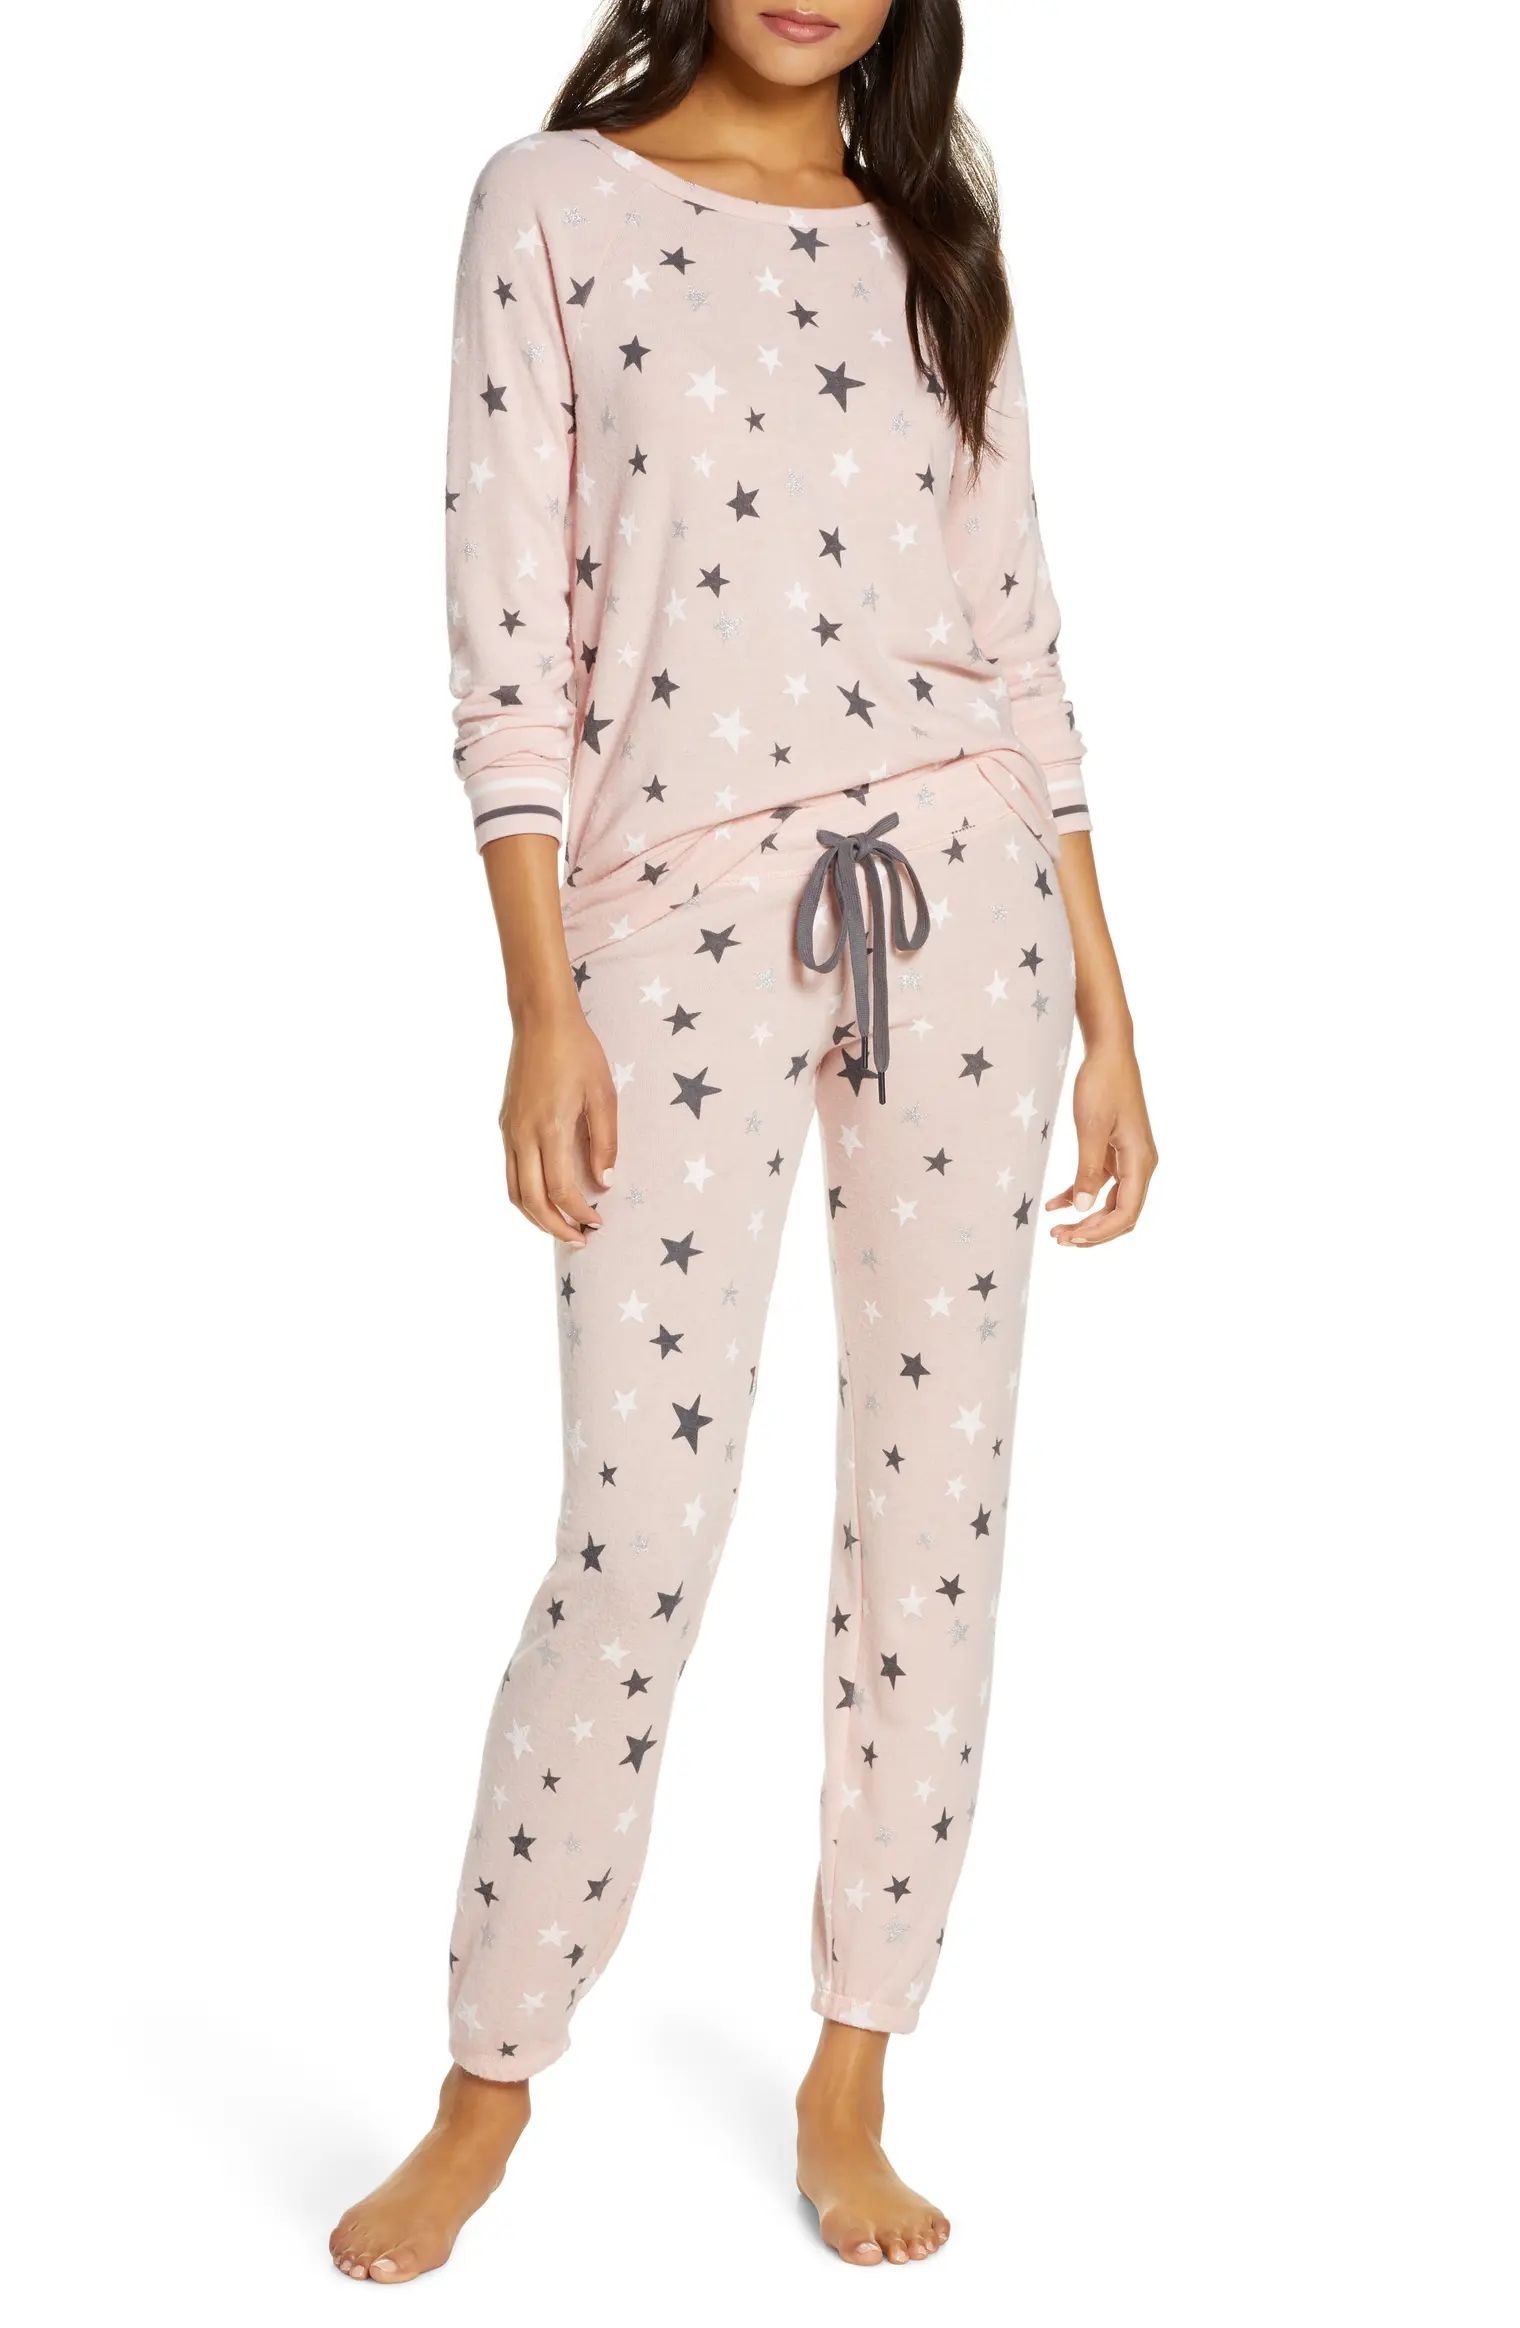 Just Peachy Pajamas | Nordstrom